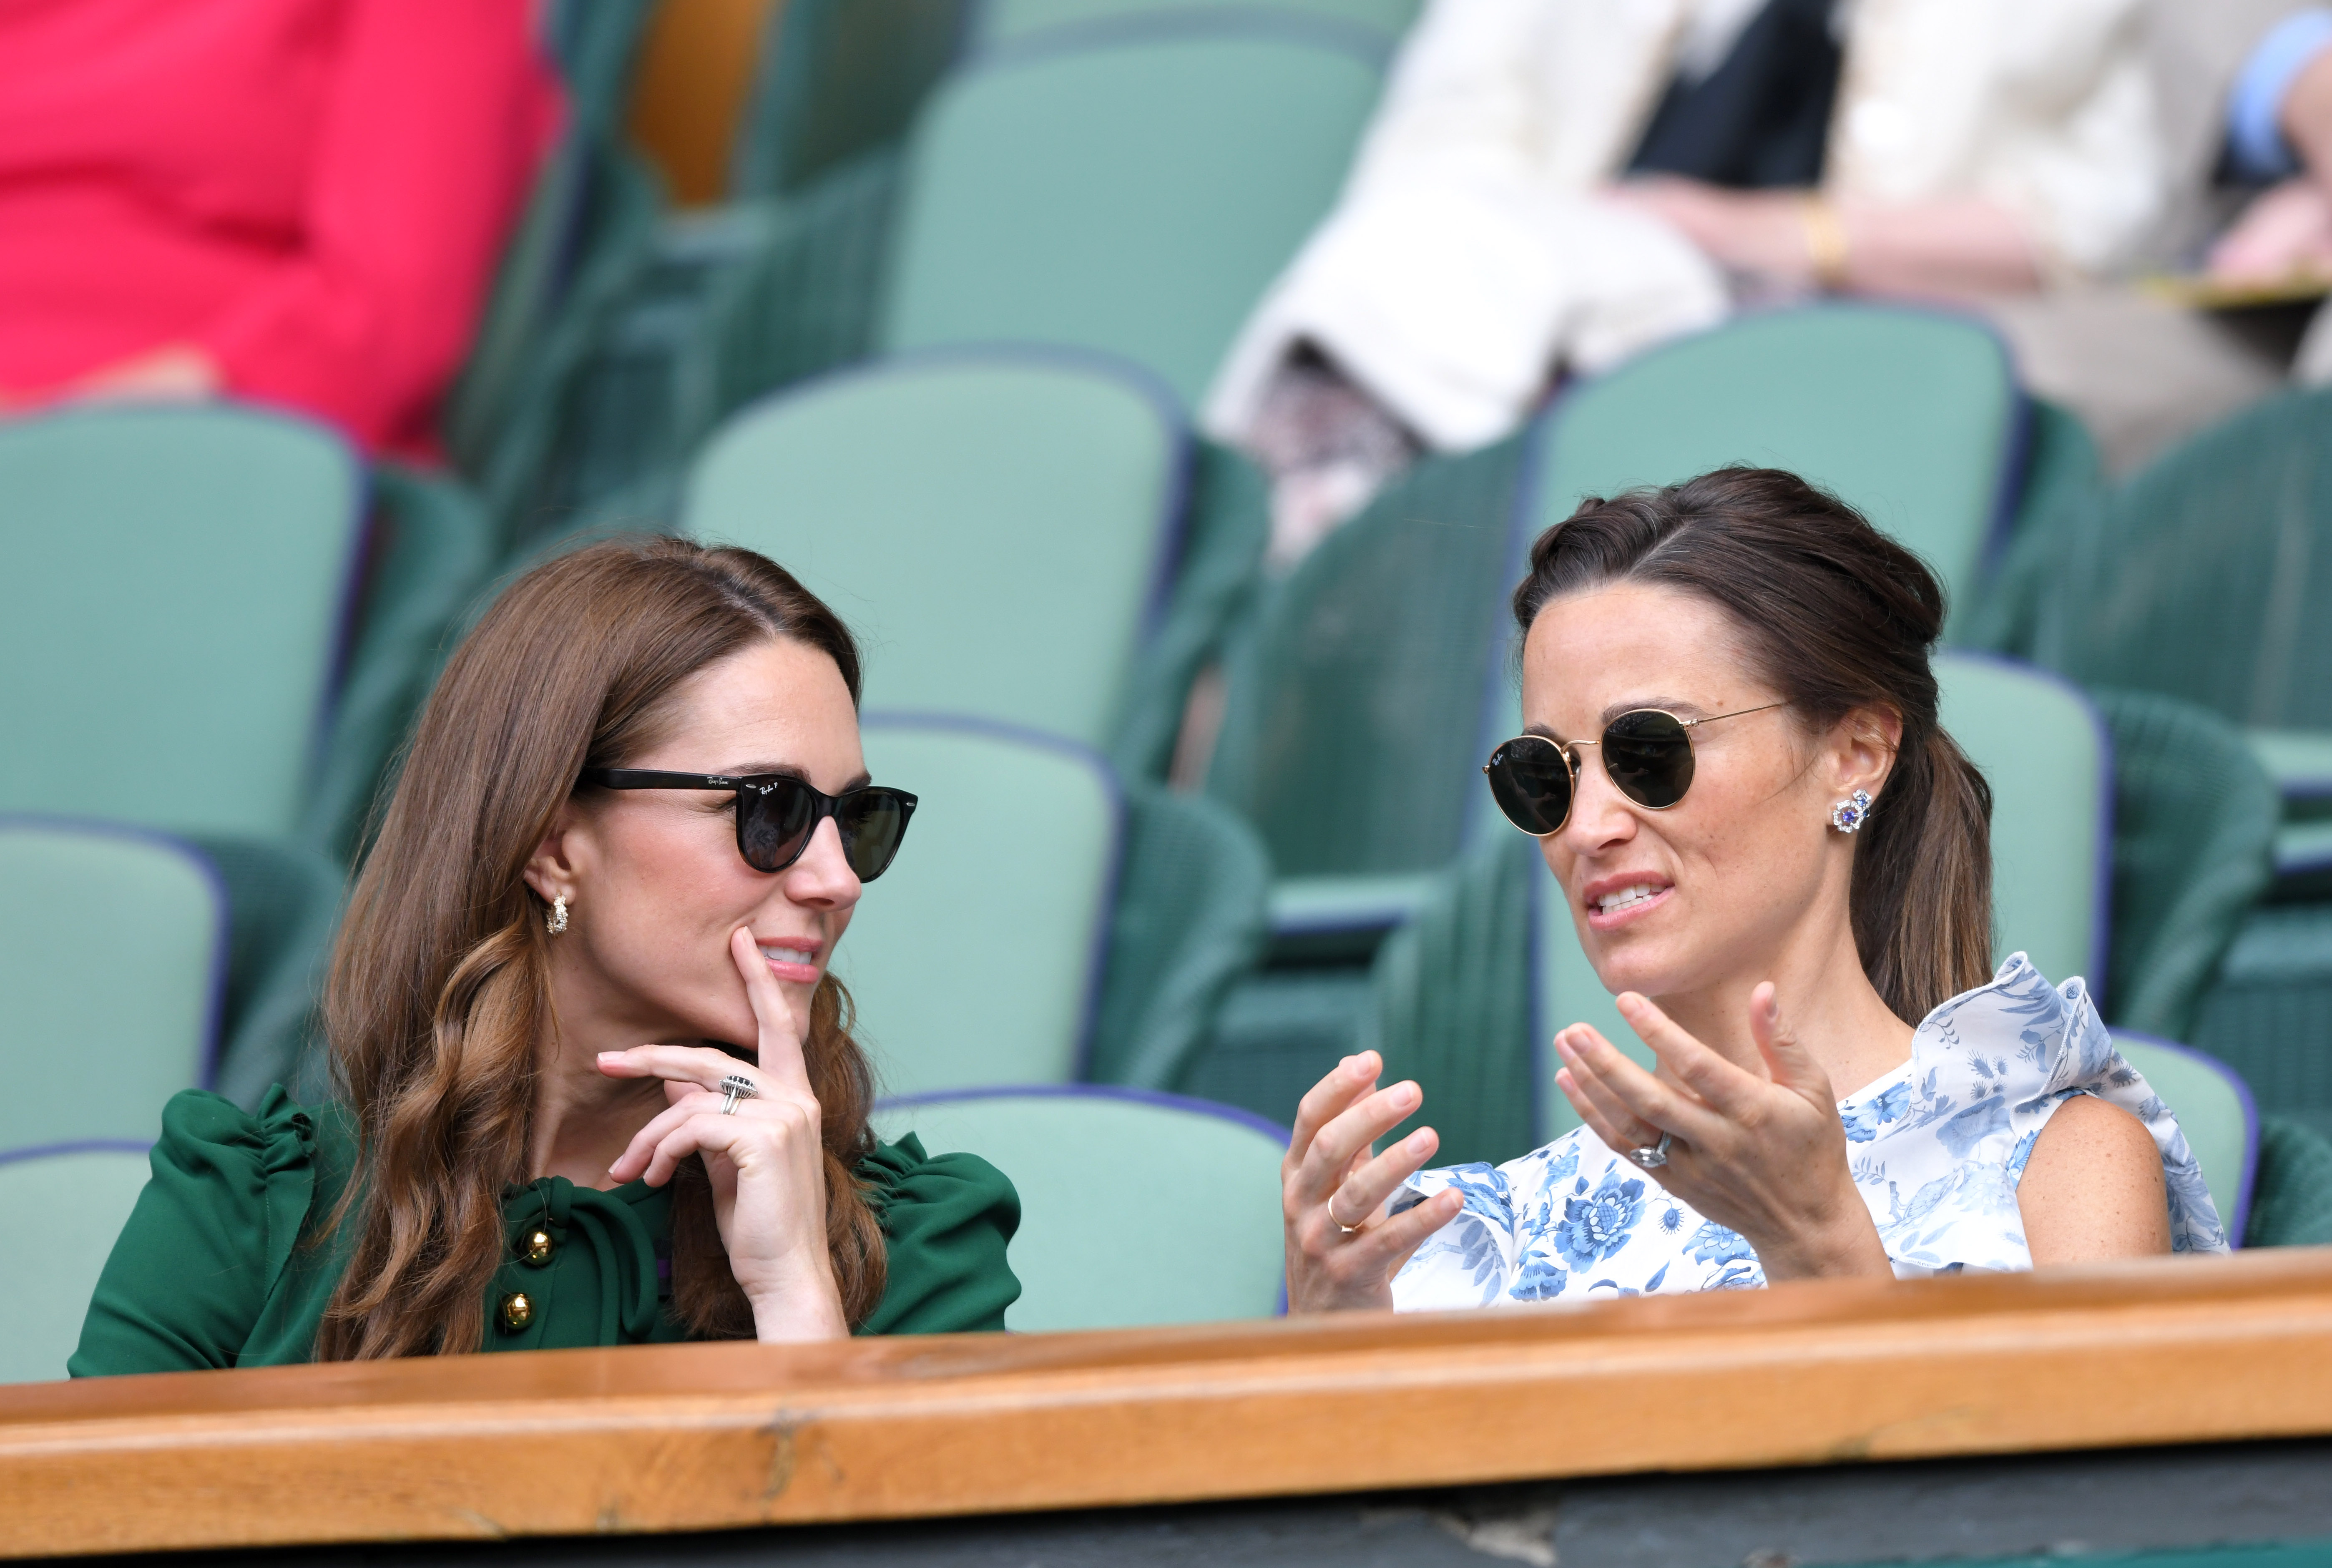 La princesa Catherine y Pippa Middleton en el Campeonato de Tenis de Wimbledon en Londres, Inglaterra, el 13 de julio de 2019 | Foto: Getty Images